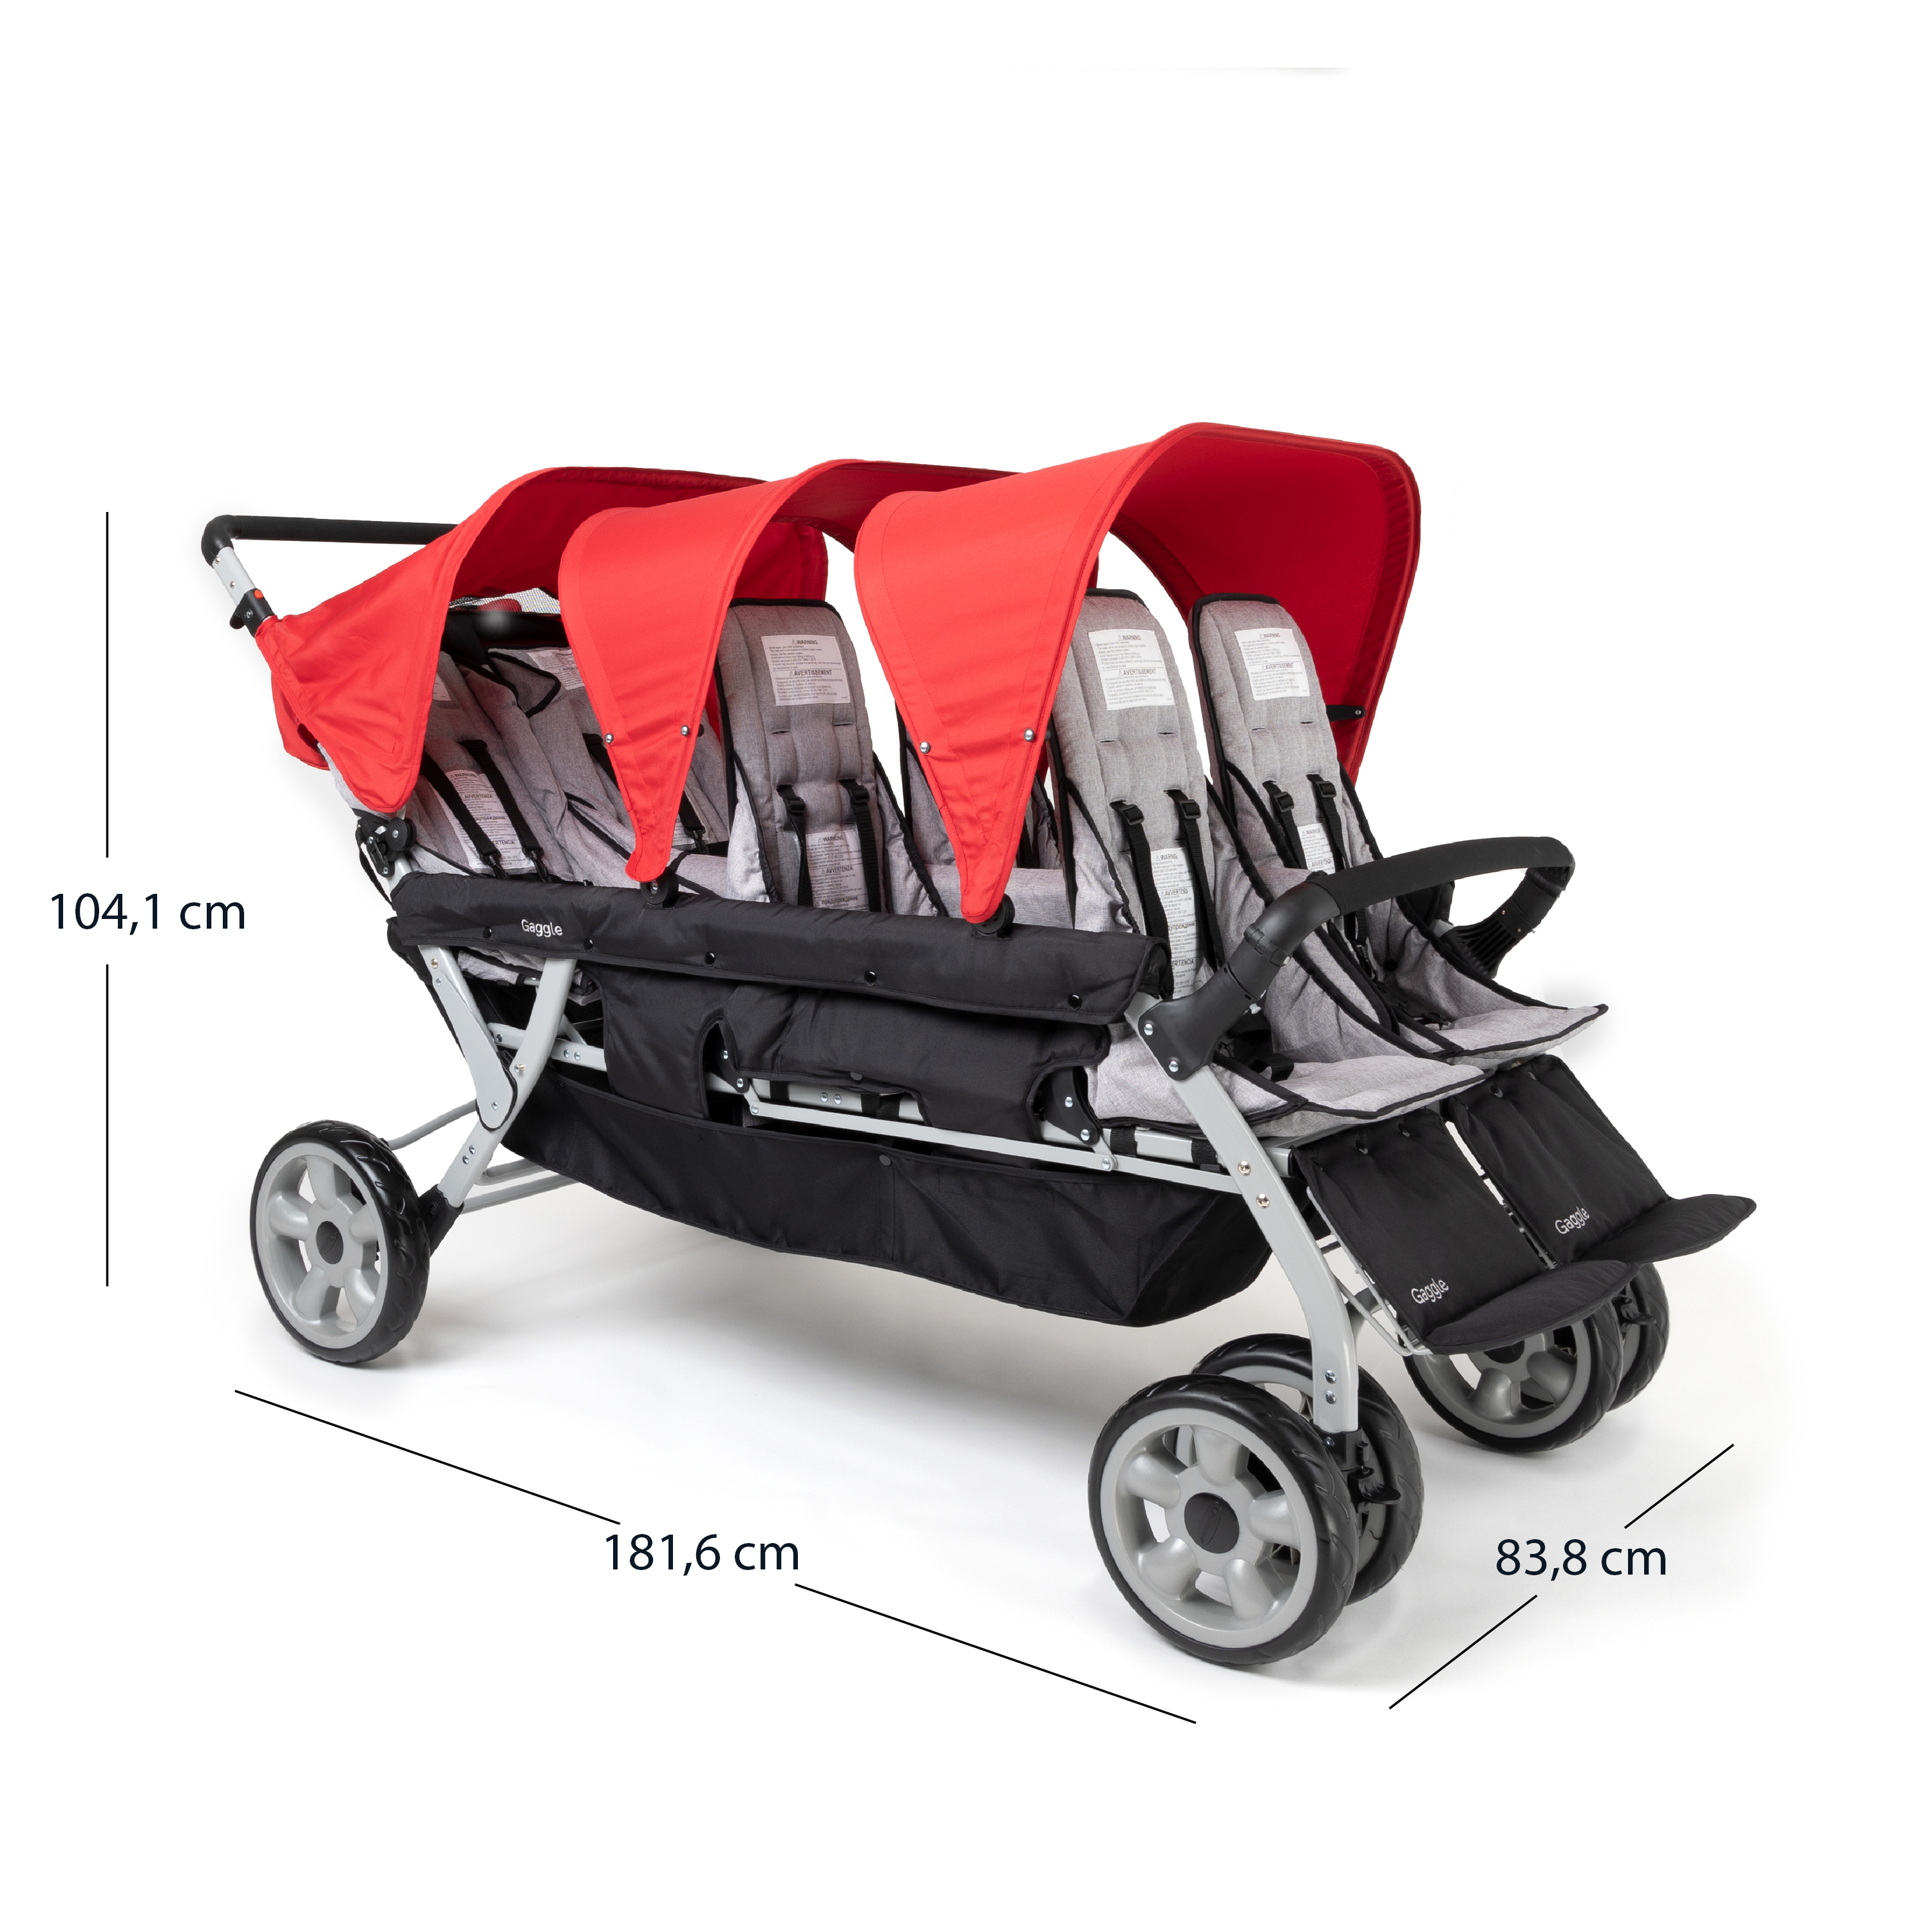 Gaggle Jamboree opvouwbare kinderwagen / buggy voor 6 kinderen in rood